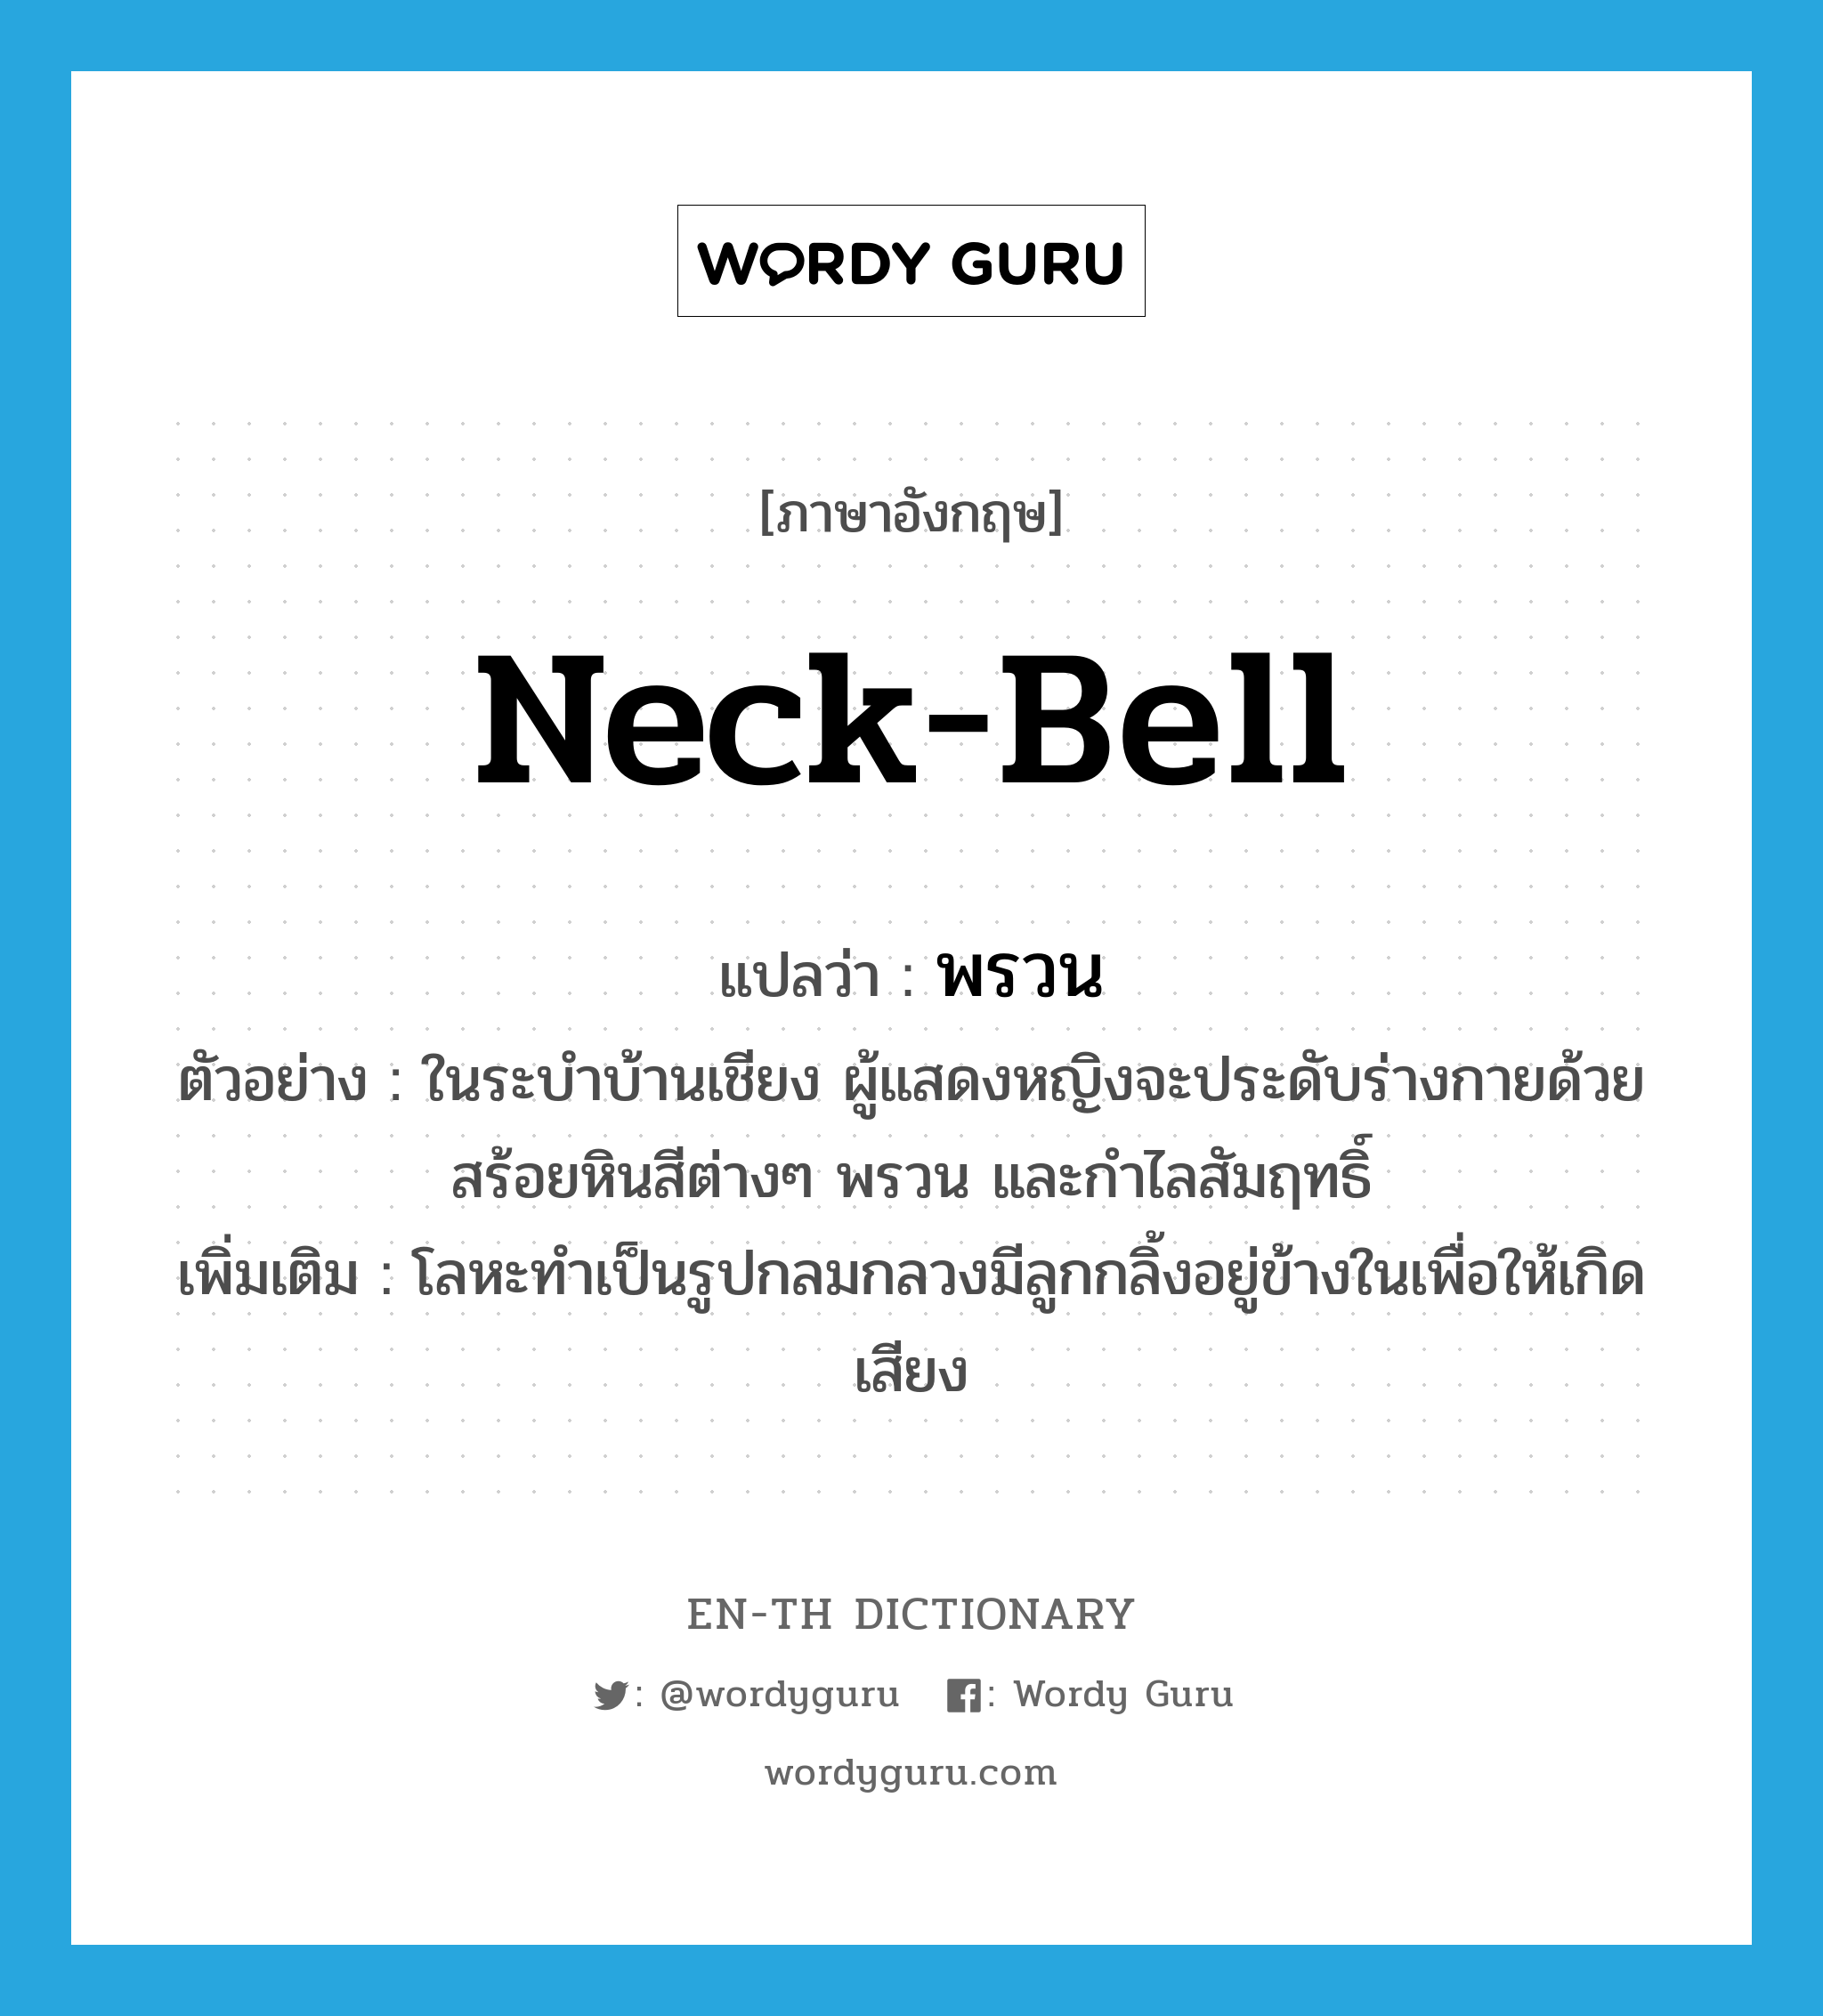 neck-bell แปลว่า?, คำศัพท์ภาษาอังกฤษ neck-bell แปลว่า พรวน ประเภท N ตัวอย่าง ในระบำบ้านเชียง ผู้แสดงหญิงจะประดับร่างกายด้วยสร้อยหินสีต่างๆ พรวน และกำไลสัมฤทธิ์ เพิ่มเติม โลหะทำเป็นรูปกลมกลวงมีลูกกลิ้งอยู่ข้างในเพื่อให้เกิดเสียง หมวด N